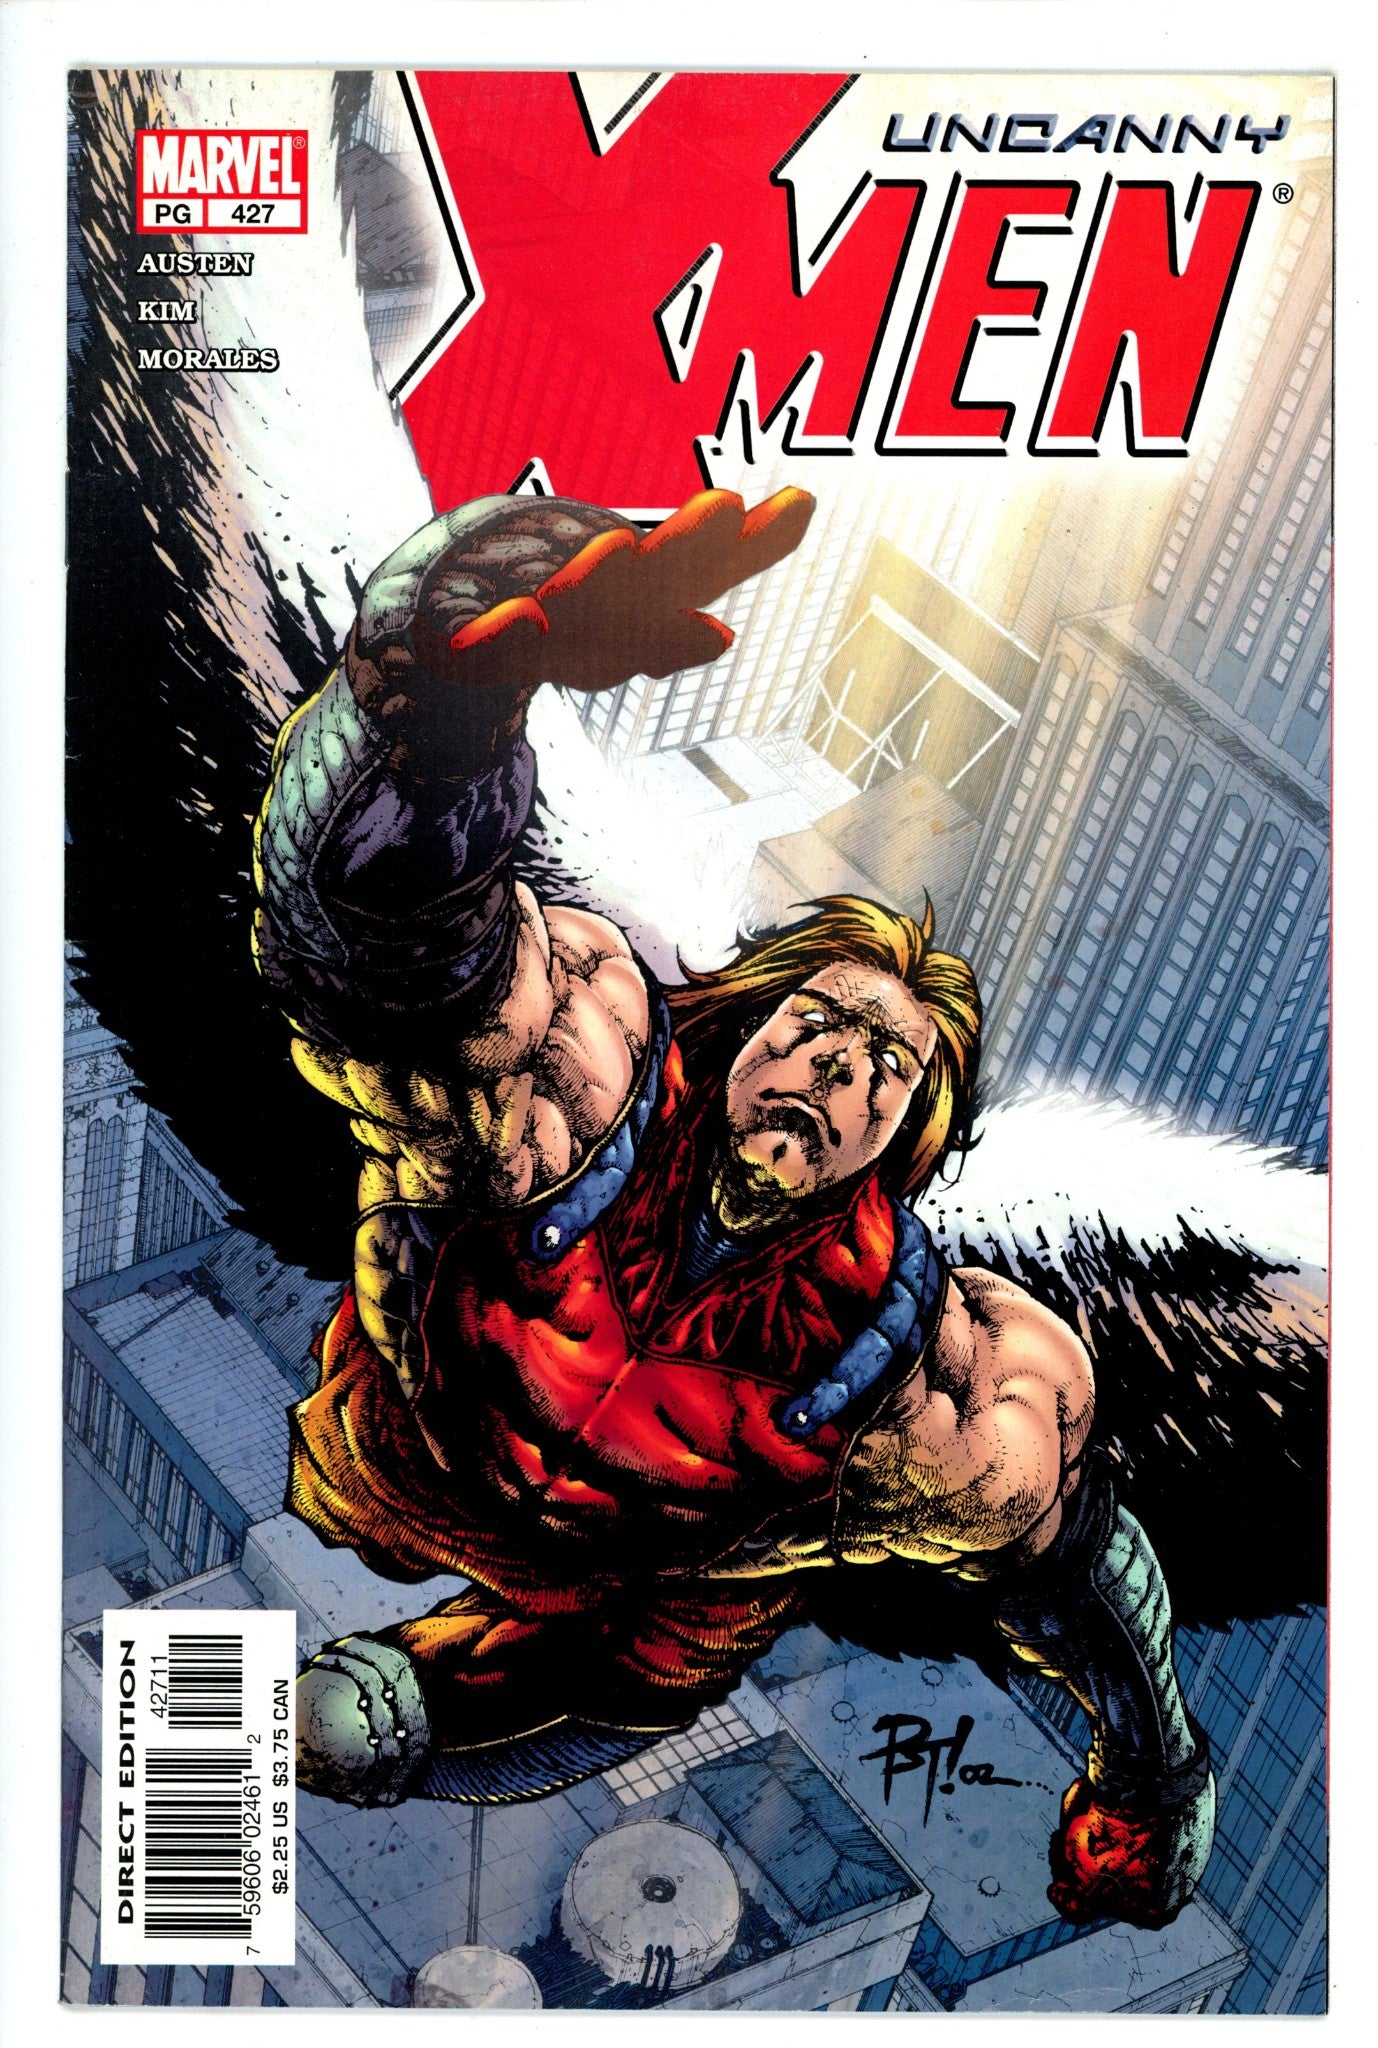 The Uncanny X-Men Vol 1 427